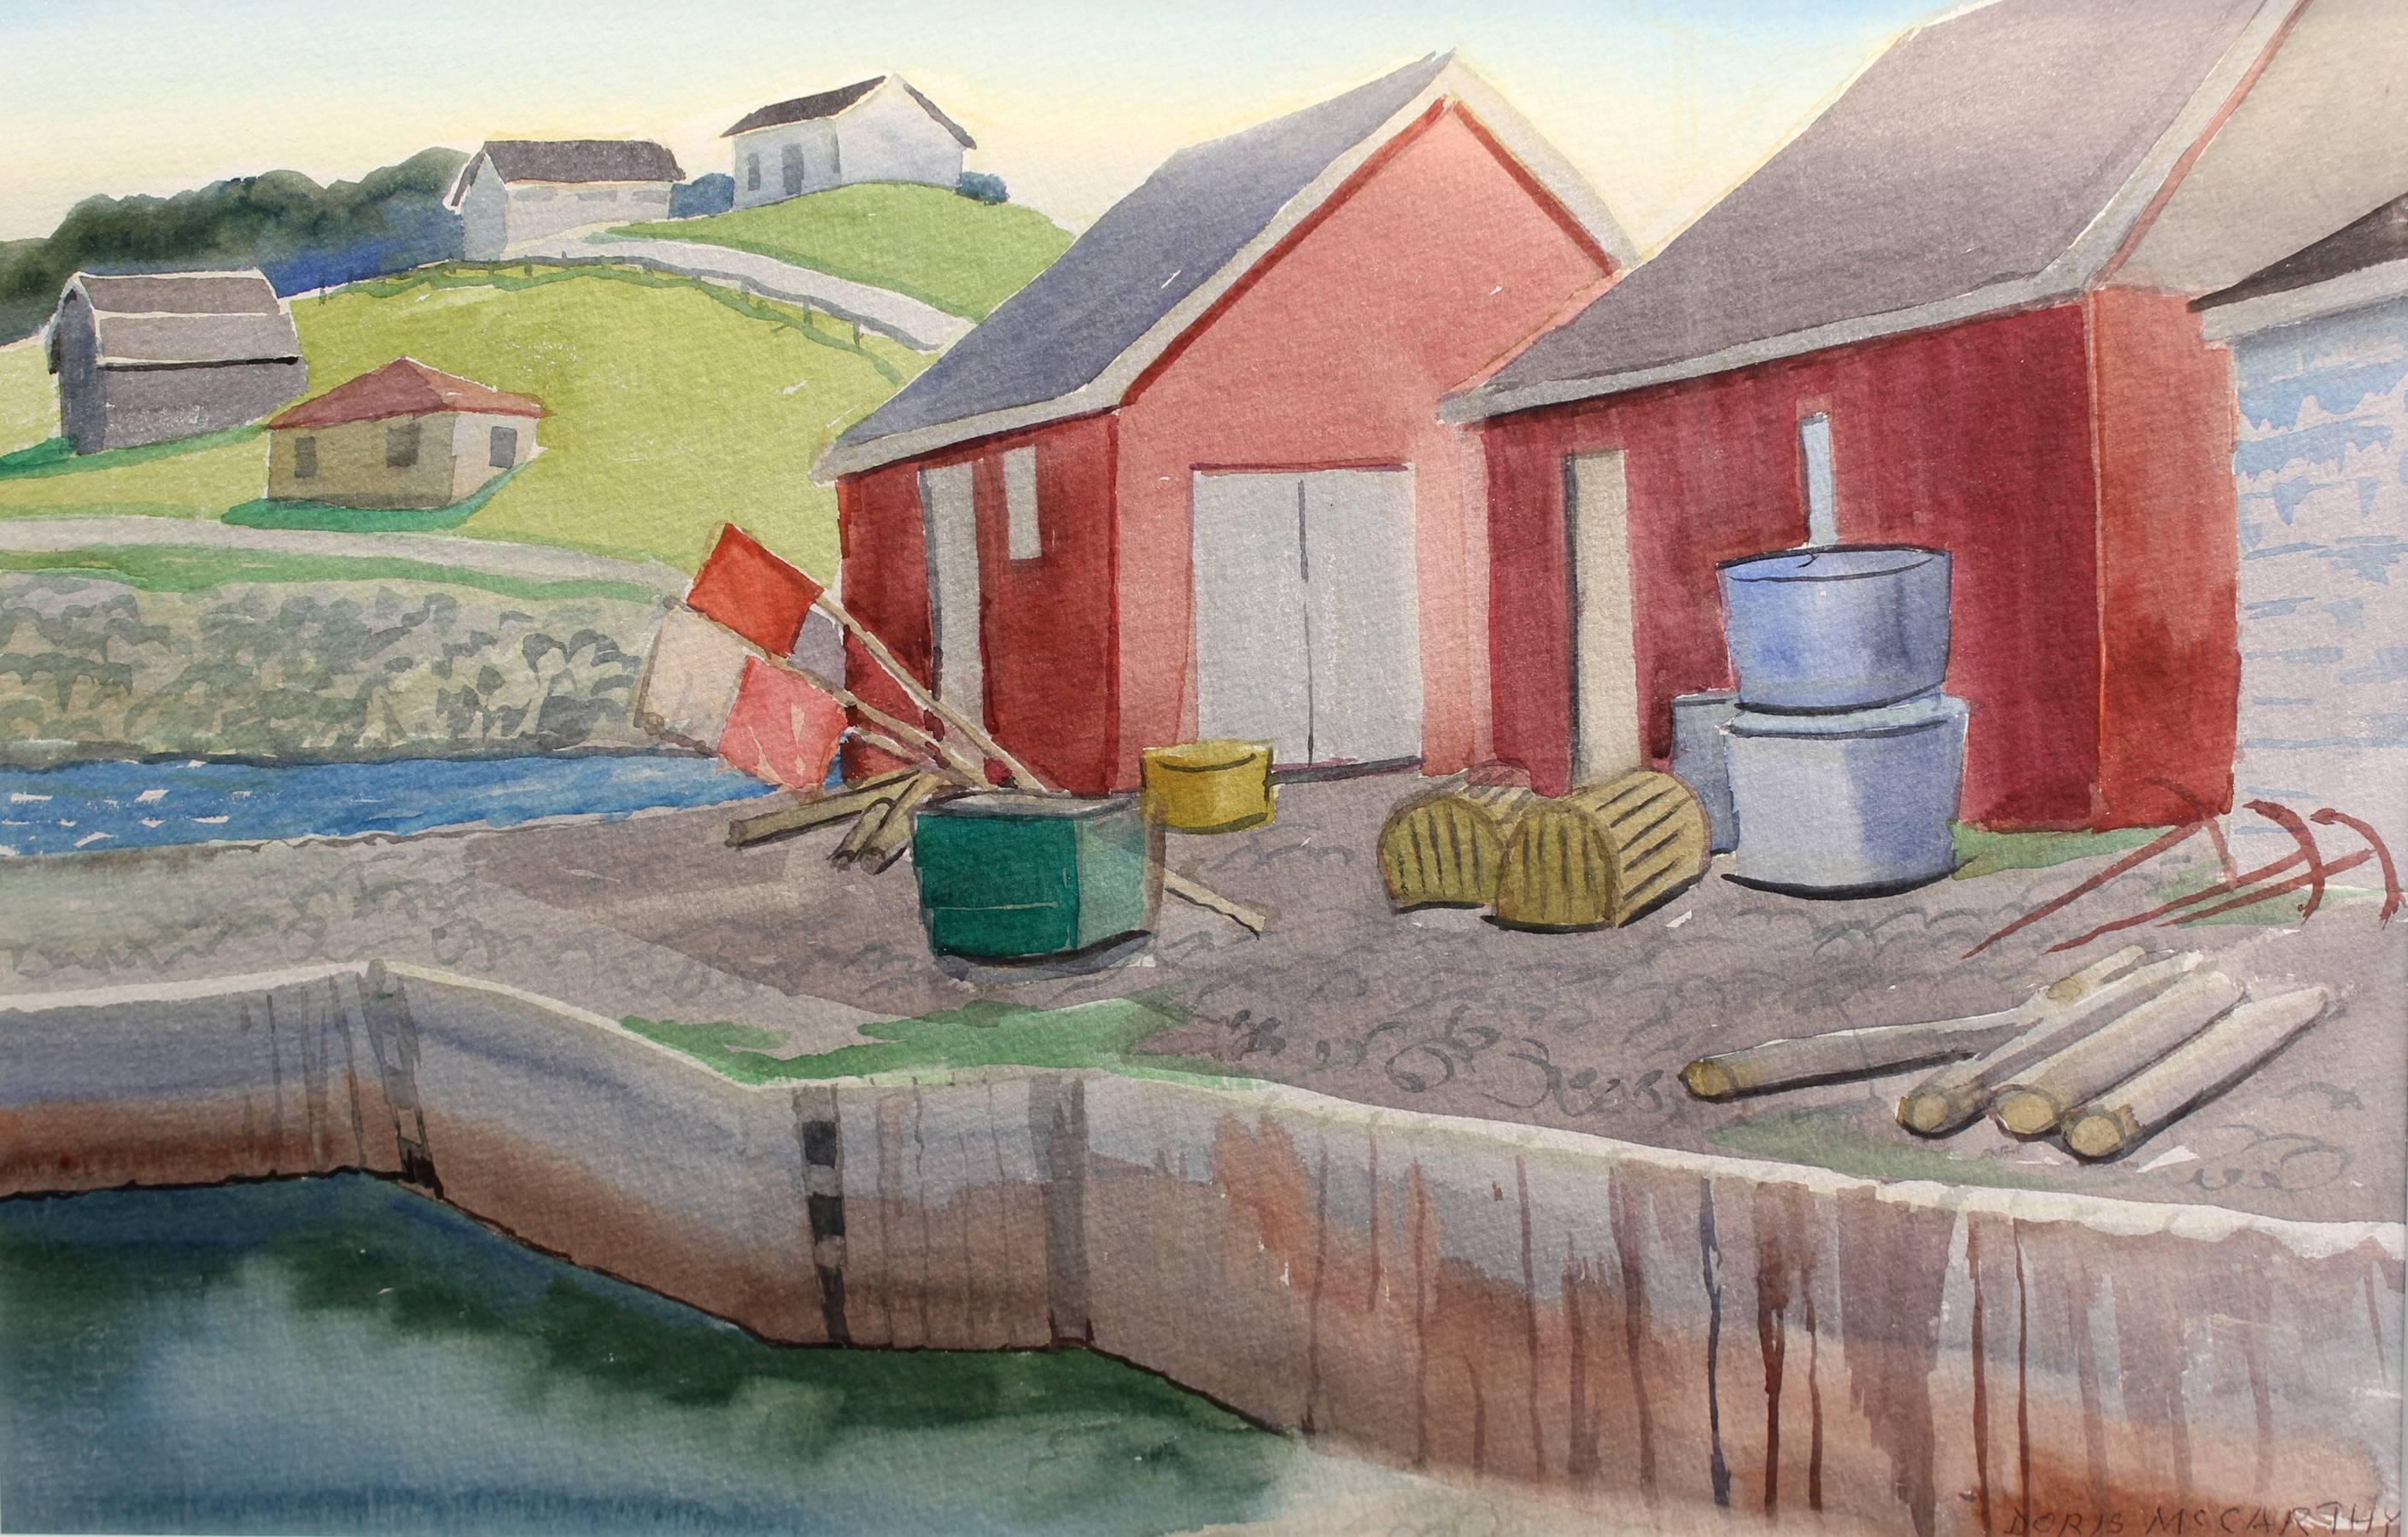 Doris McCarthy Landscape Painting - The Red Sheds at Port Au Choix, landscape watercolour painting 